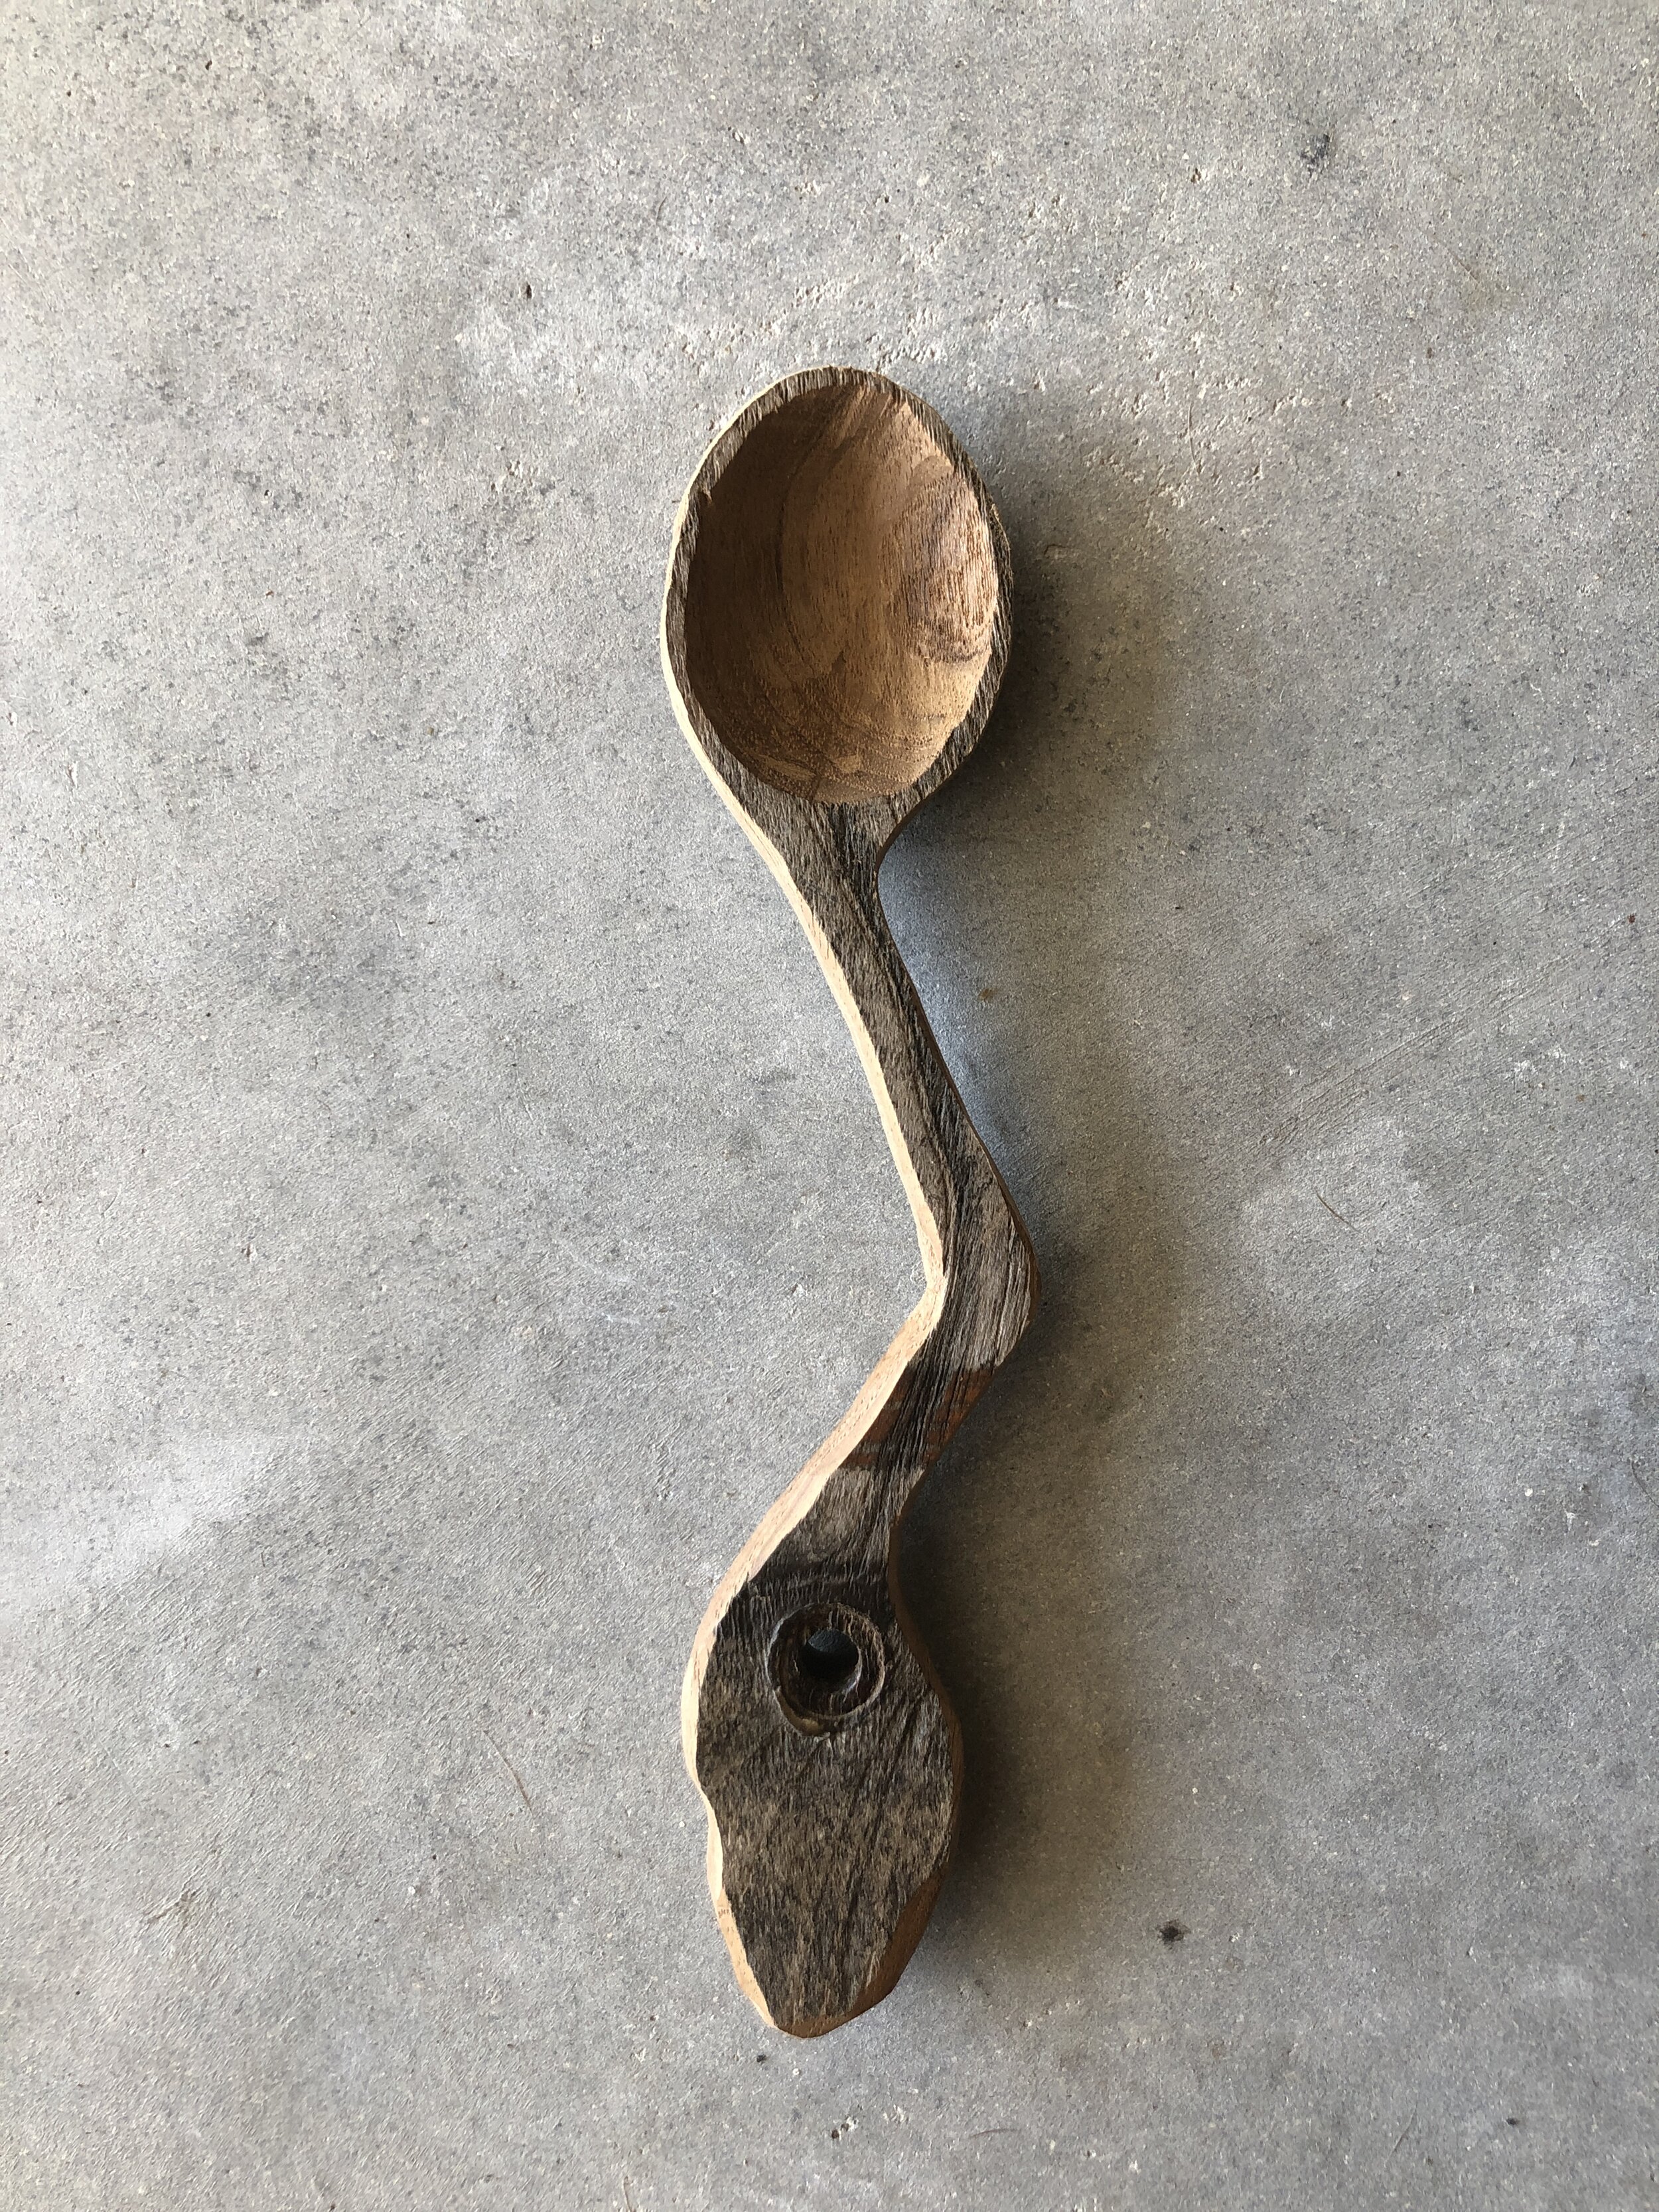 4 Rat board spoon carving.JPG